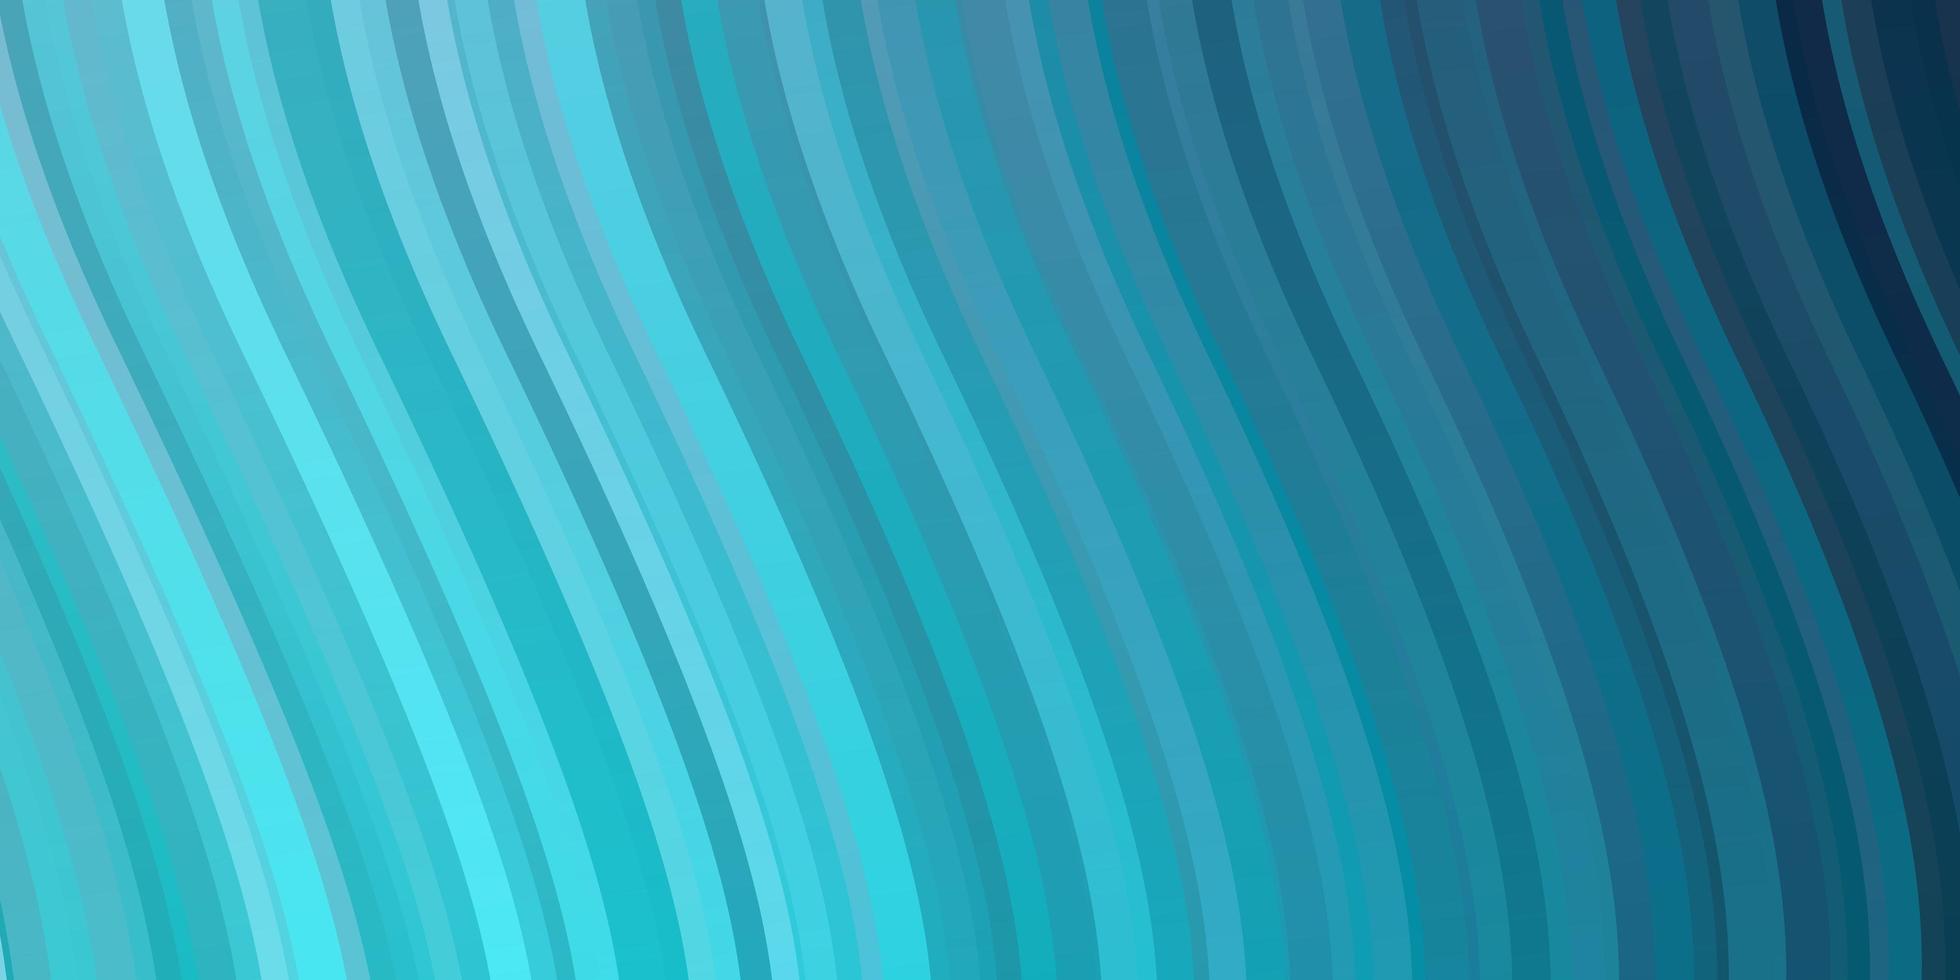 ljusrosa blå bakgrund med böjda linjer illustration i halvtonstil med lutningskurvor design för ditt företags marknadsföring vektor